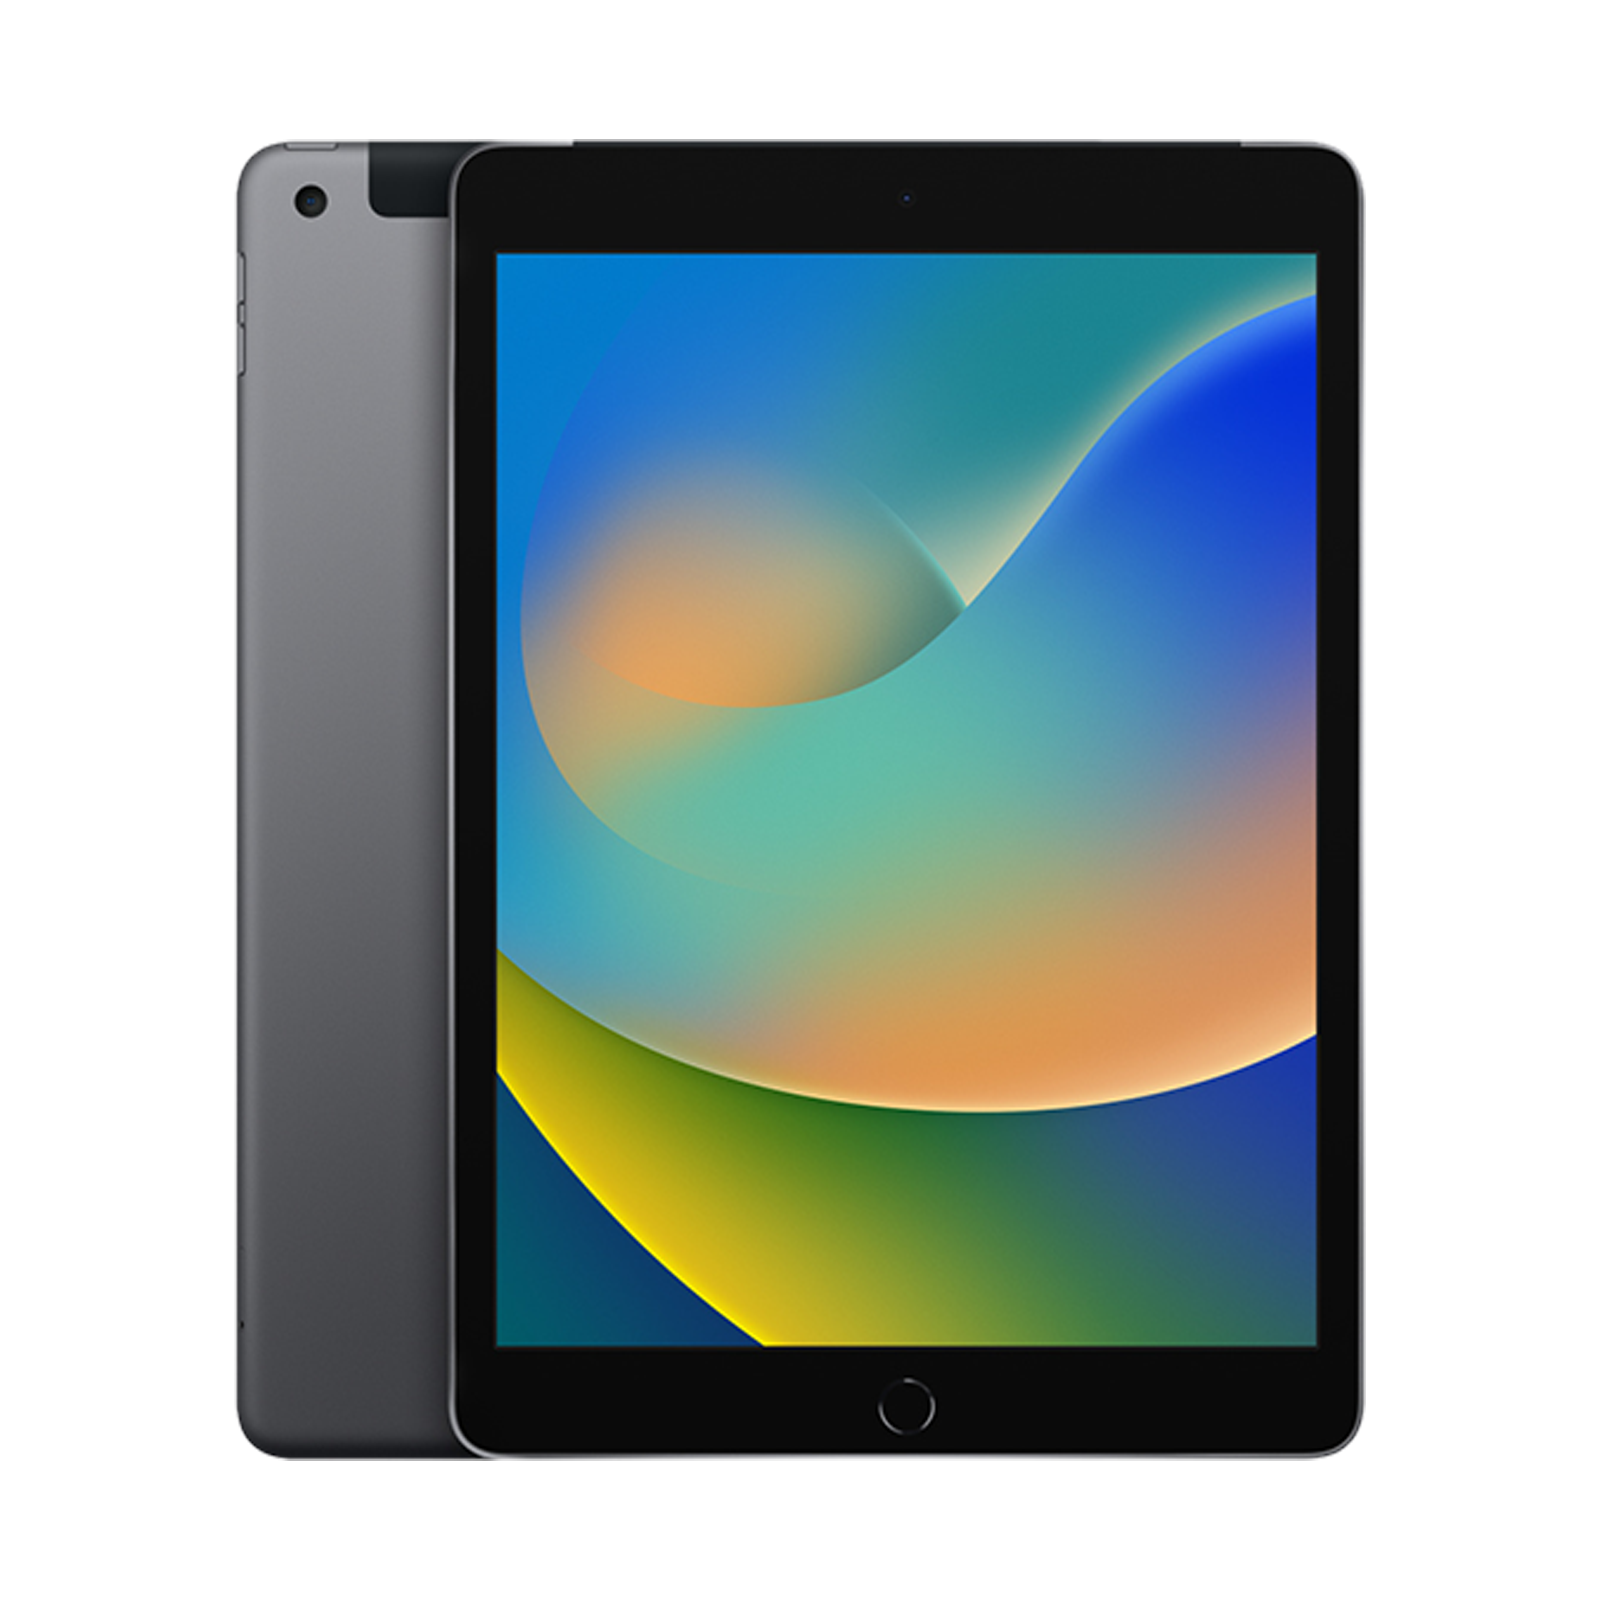 iPad Air 10.9 Wi-Fi 256GB (4ta Generacion) - Silver